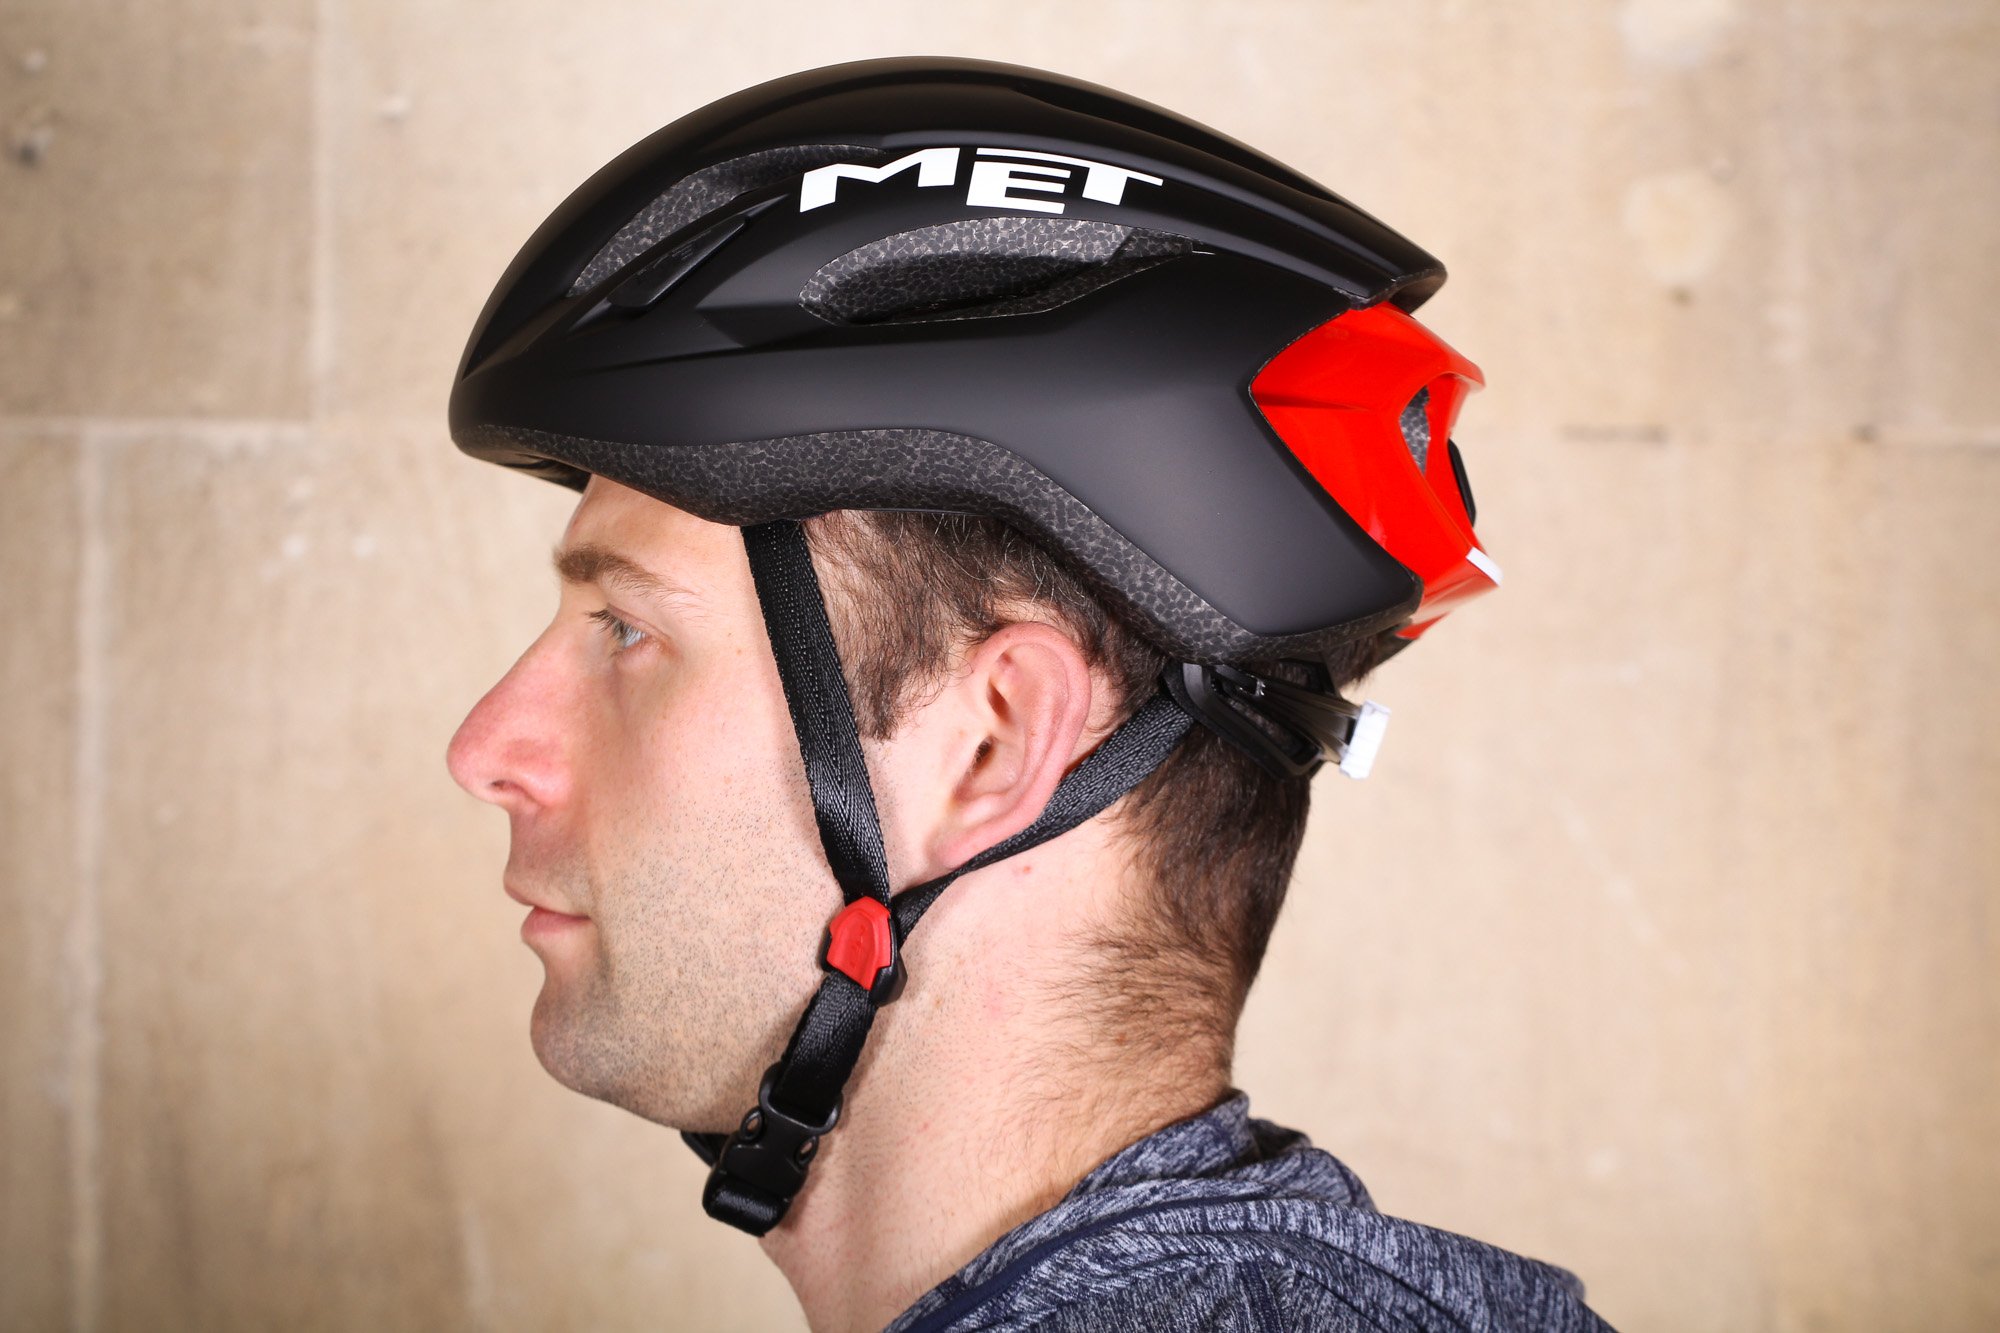 Review: Met Strale Helmet | road.cc